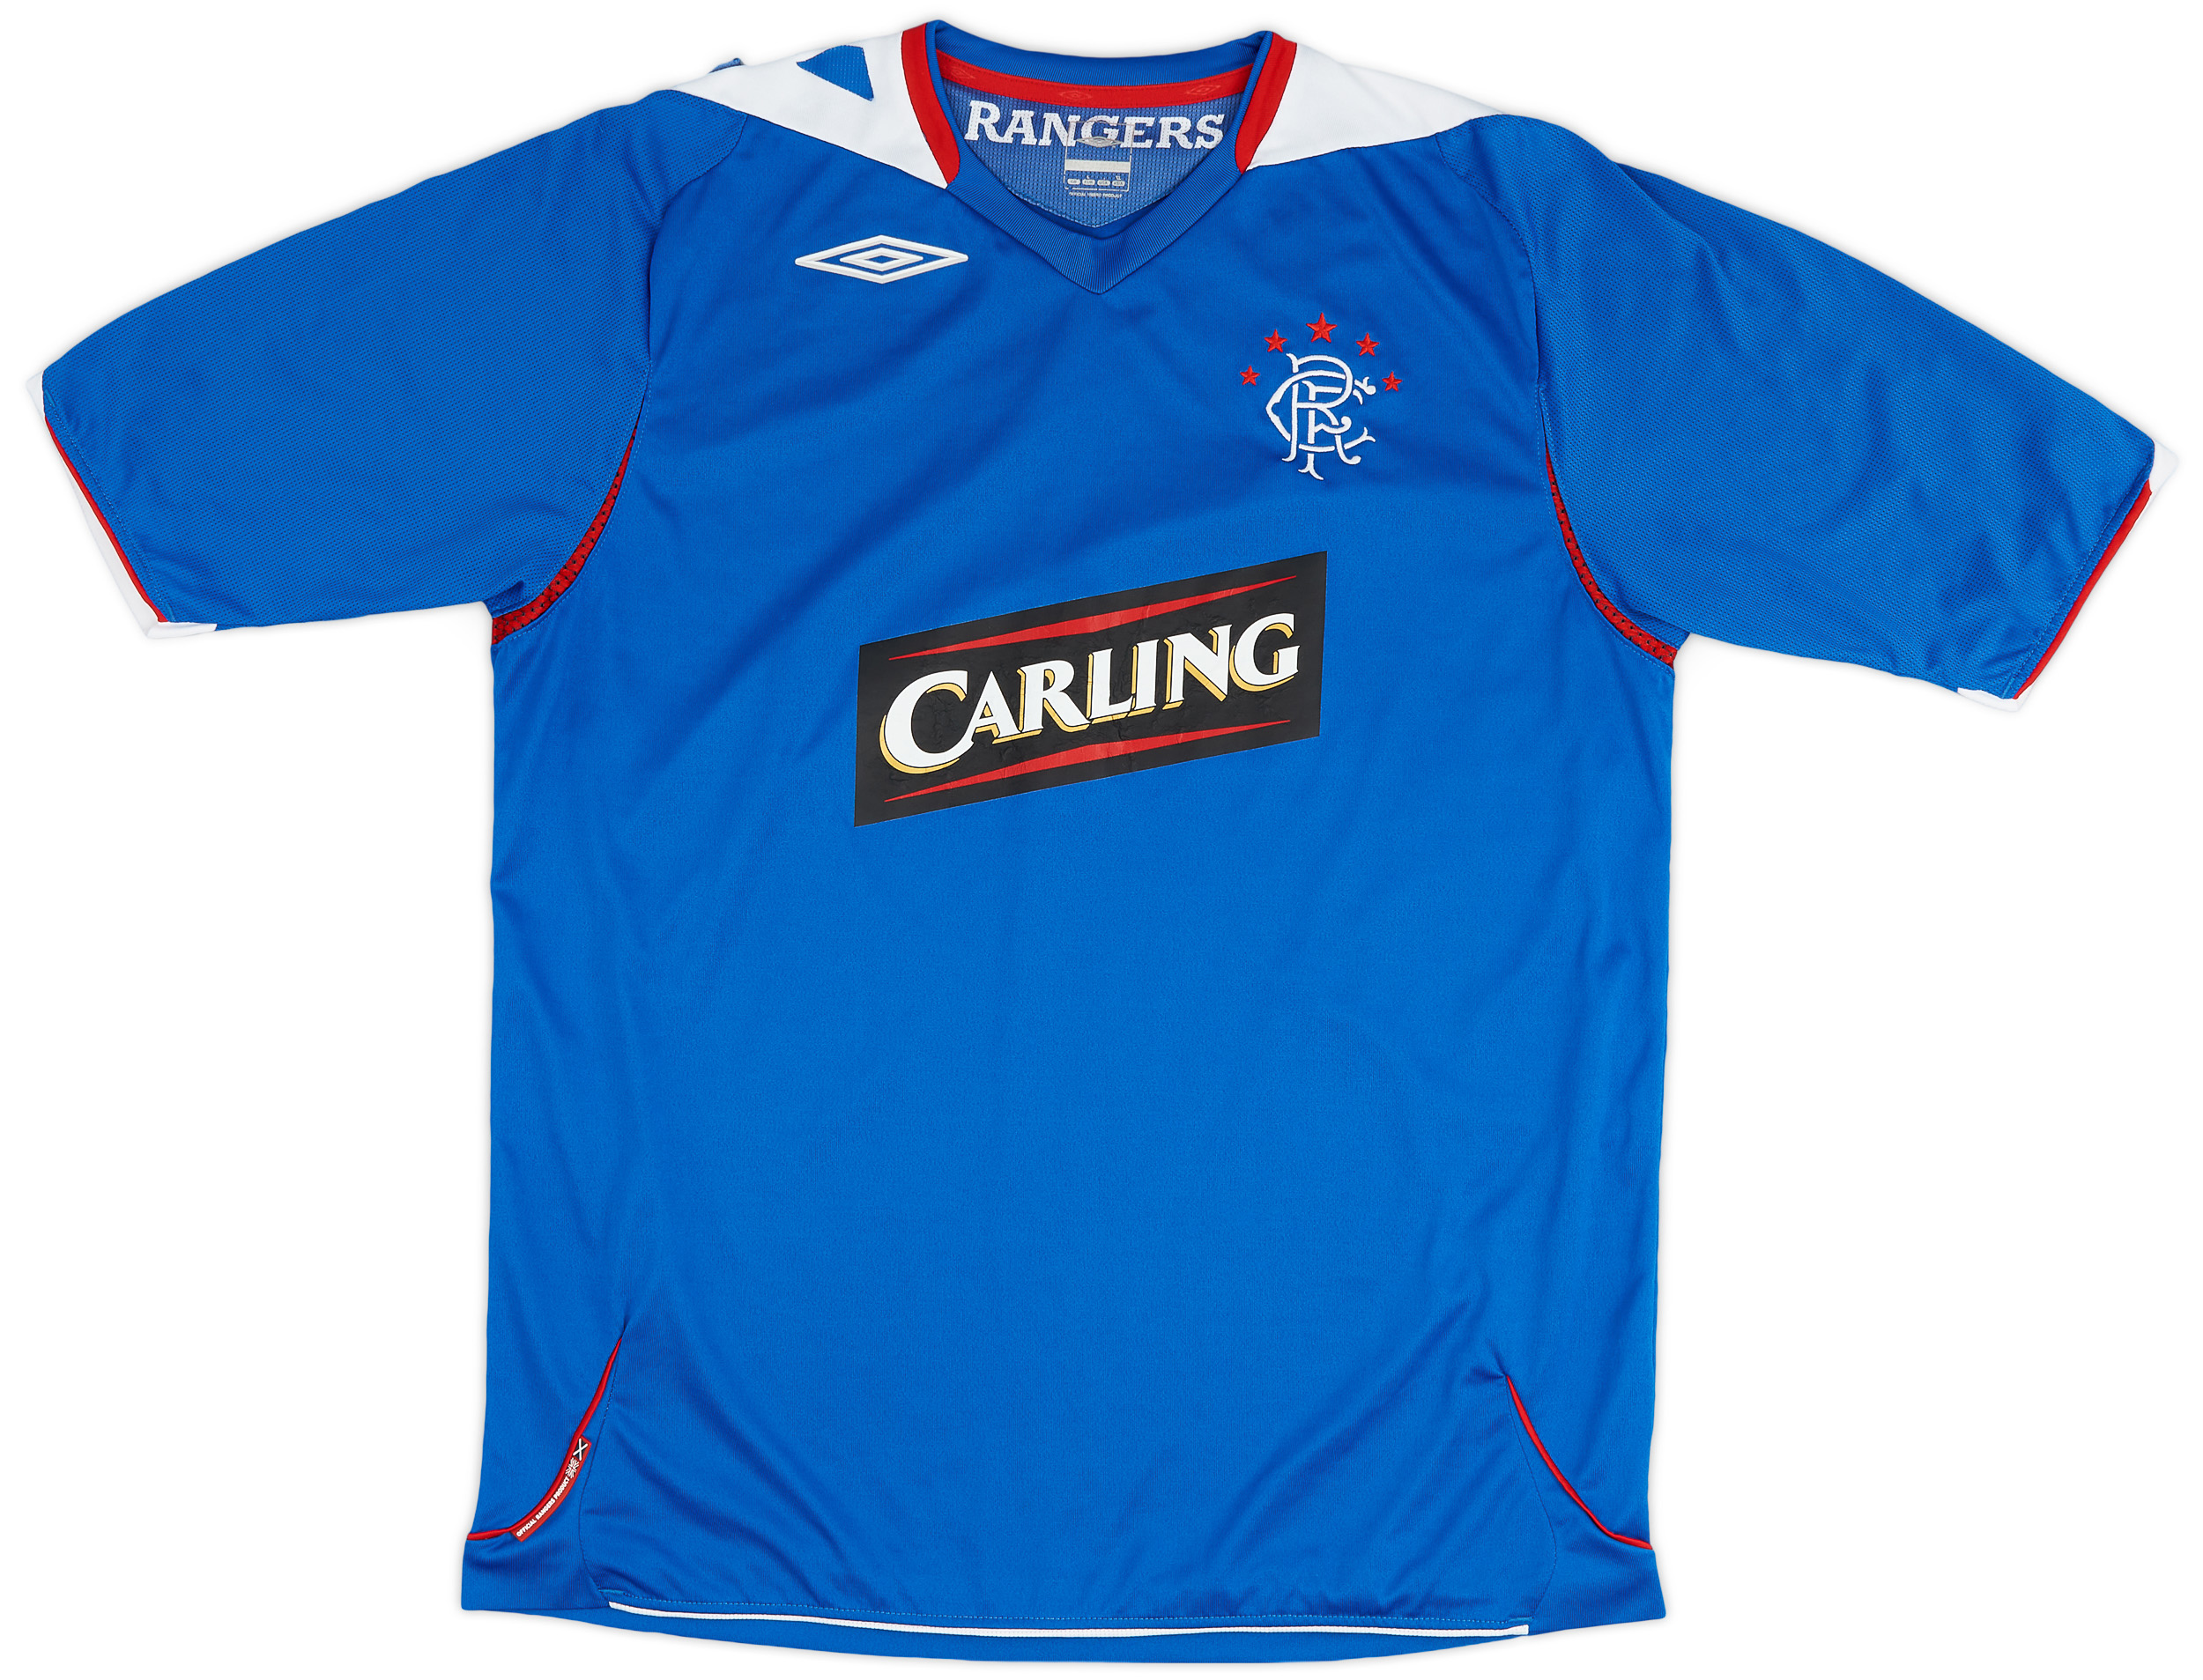 2006-07 Rangers Home Shirt - 5/10 - ()